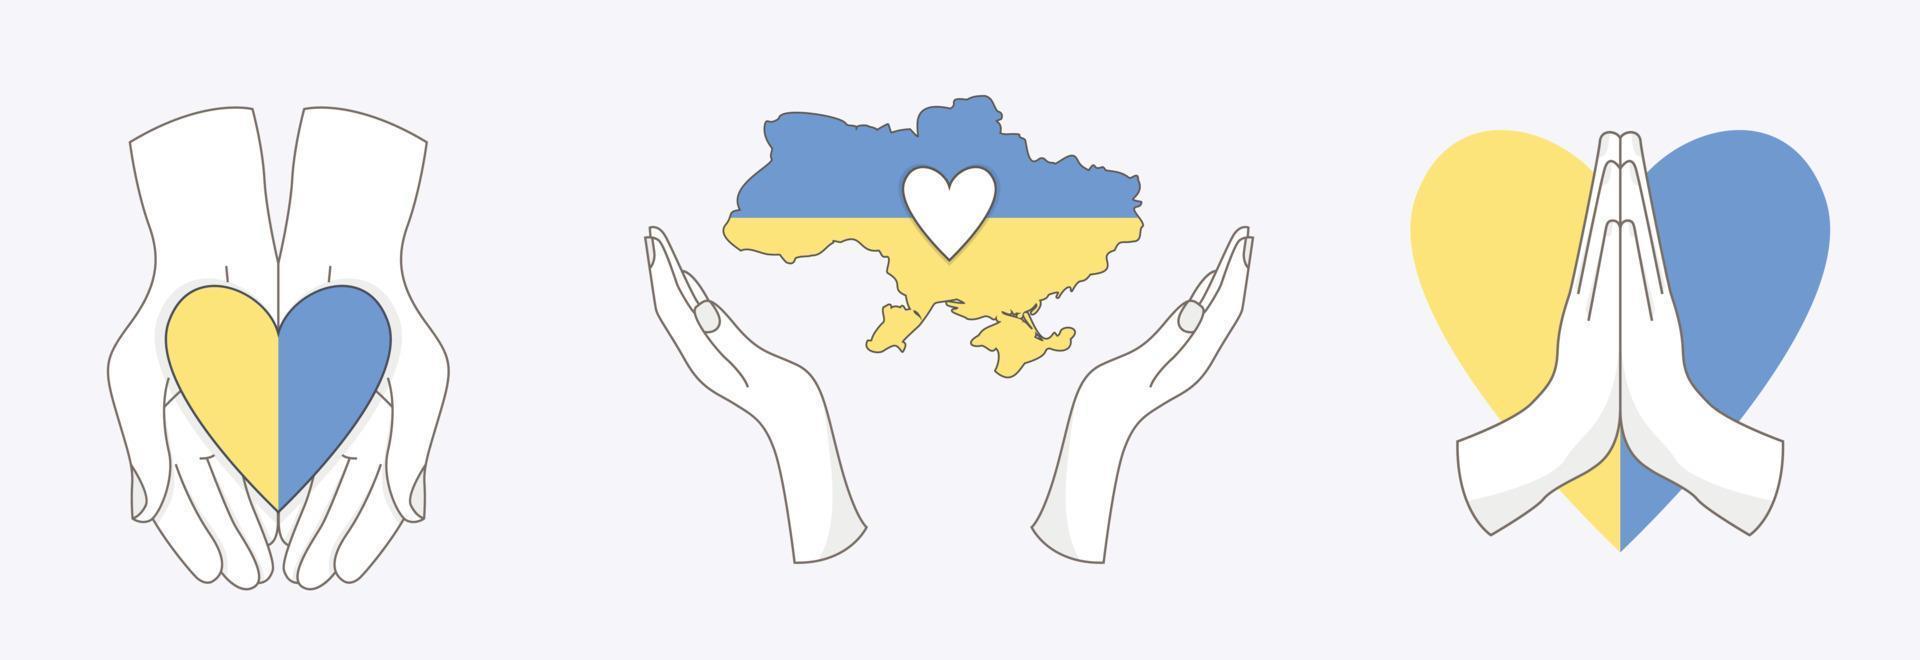 conjunto de elementos ucranianos com mãos diferentes. bandeira do coração e mapa da ucrânia. salvar o conceito de ucrânia. vector ícones planos isolados no fundo branco